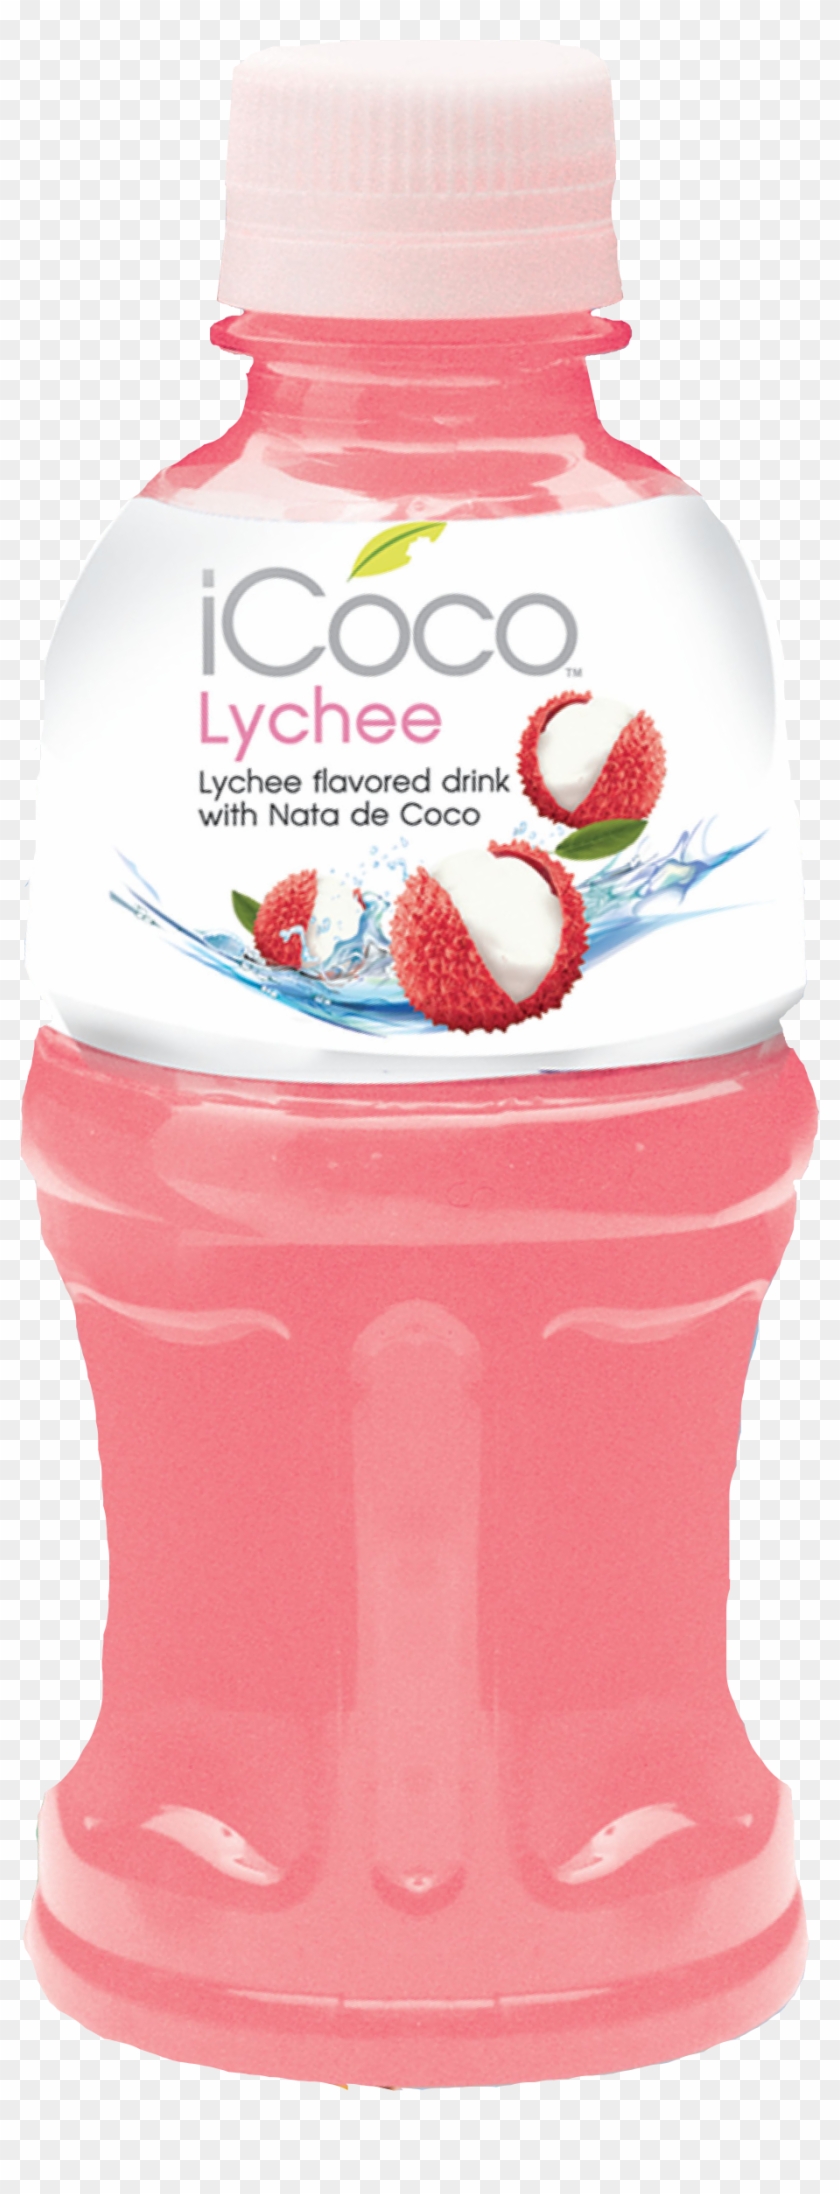 Icoco Fruit Juice With Nata De Coco -lychee - Fruit Juice With Nata De Coco #689141